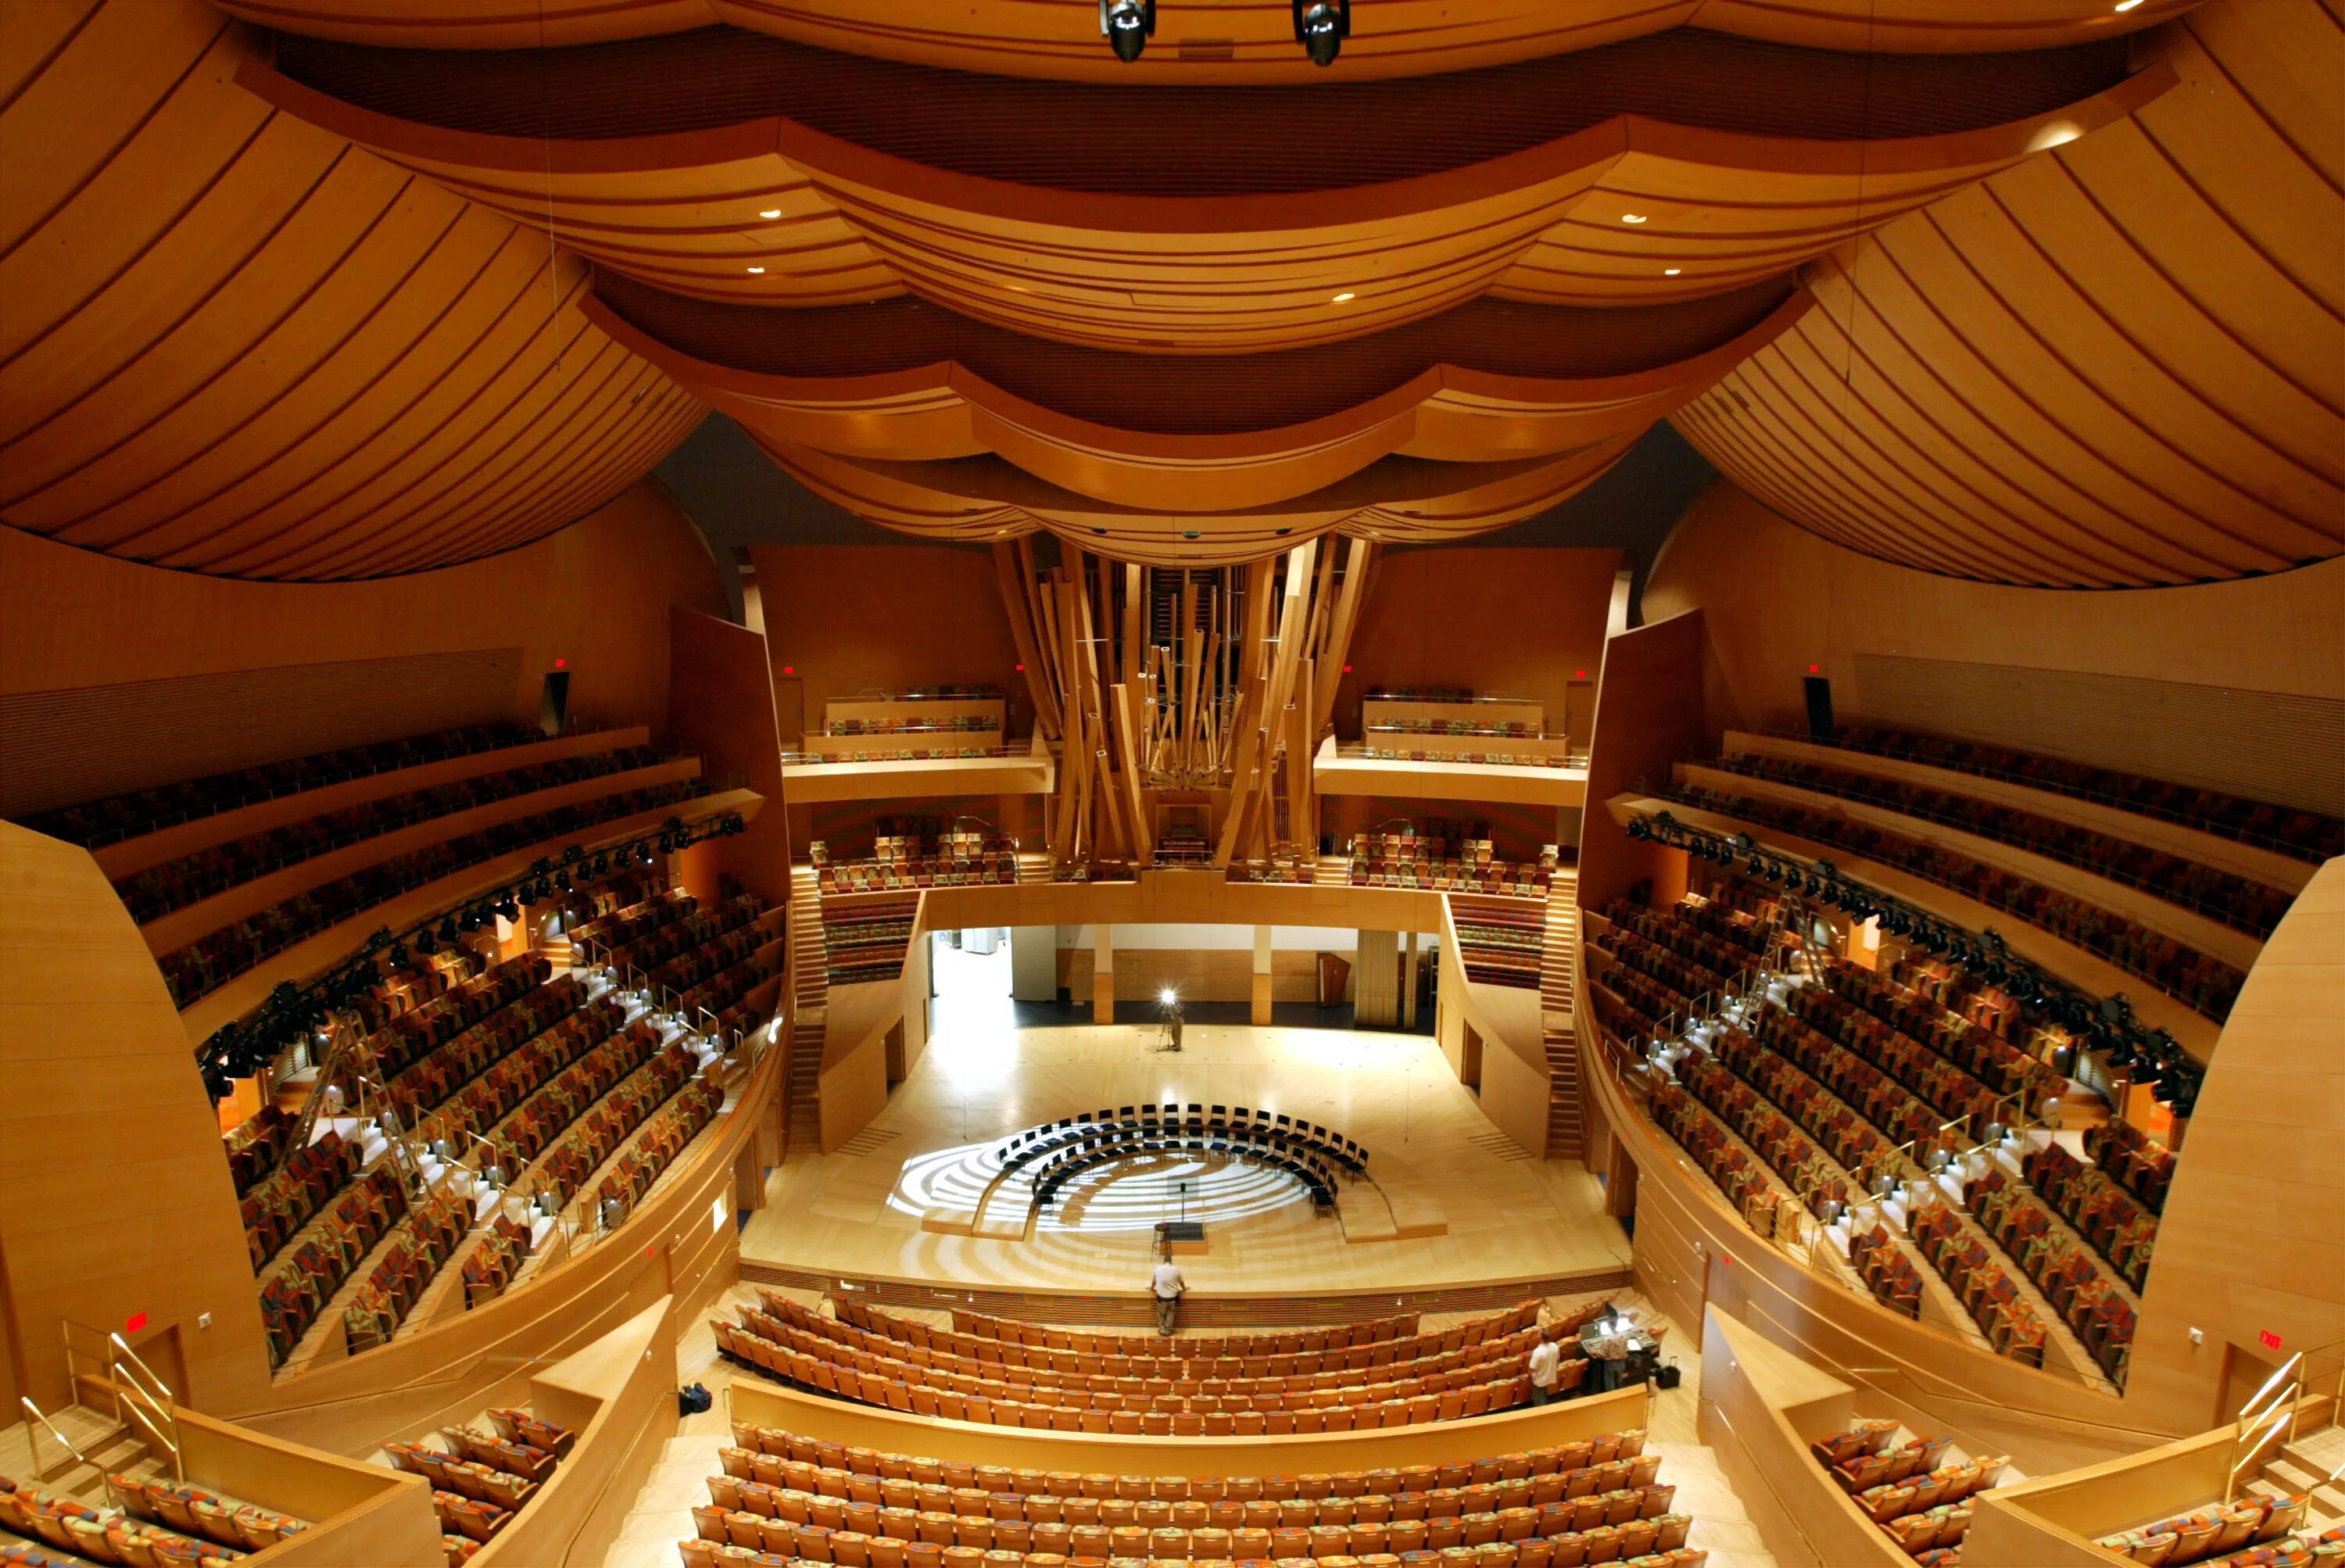 Концертный зал Уолта Диснея в Лос-Анджелесе, США. Walt Disney концертный зал (Лос Анджелес). Фрэнк Гери концертный зал Уолта Диснея. Зал Уолта Диснея (Лос-Анджелес, США, 2003 Г.). Концертный зал диснея залы